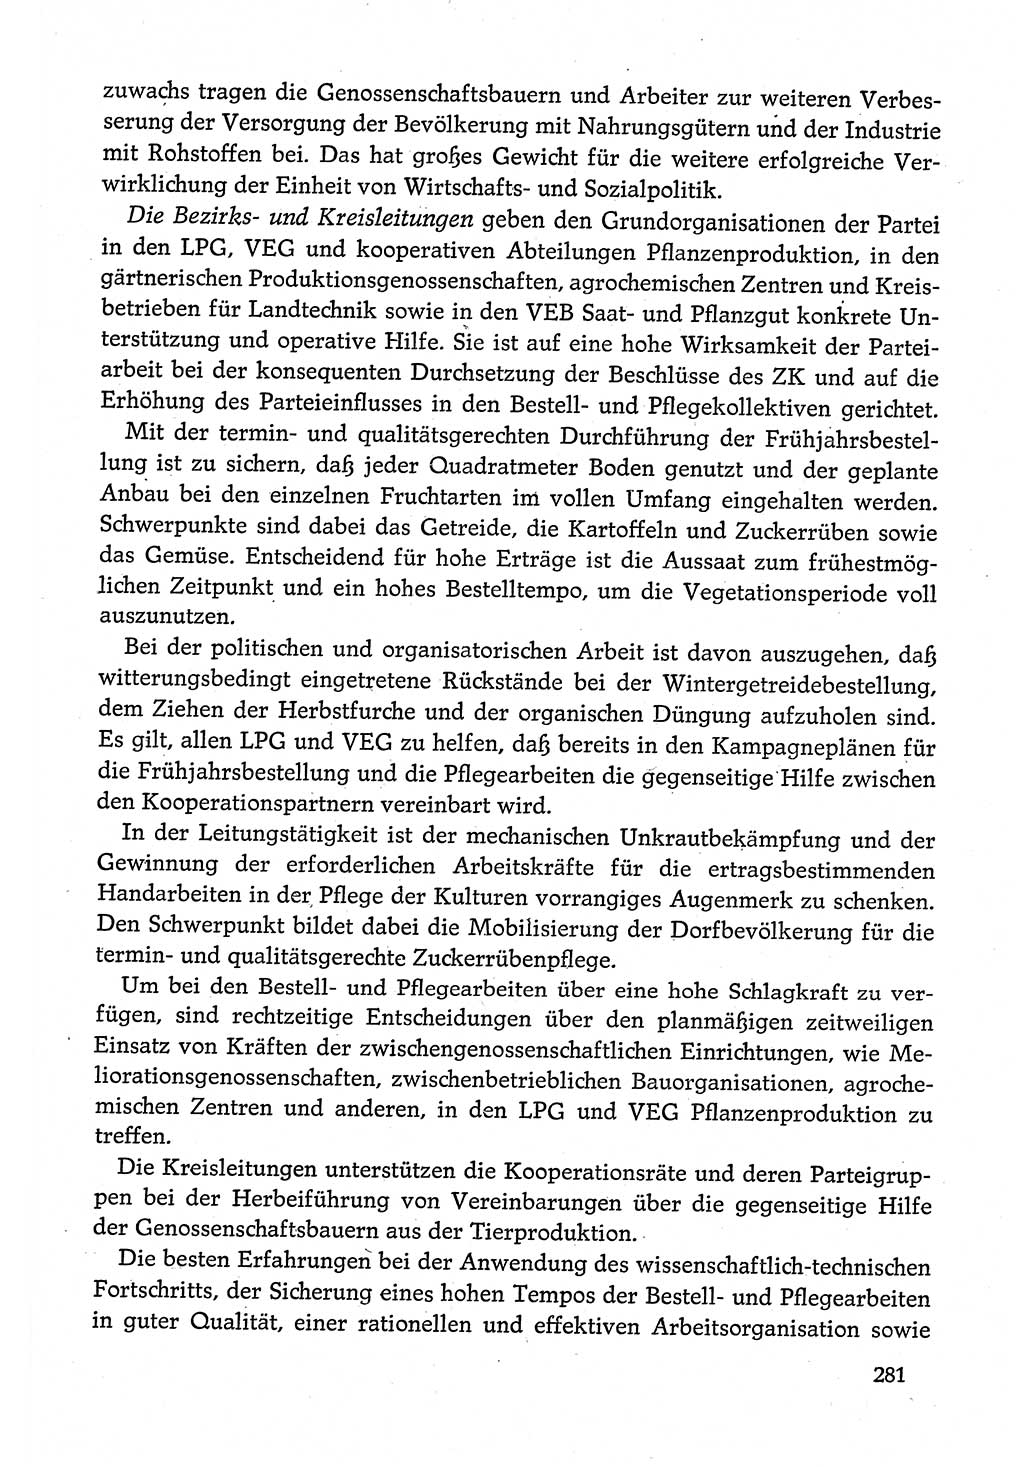 Dokumente der Sozialistischen Einheitspartei Deutschlands (SED) [Deutsche Demokratische Republik (DDR)] 1980-1981, Seite 281 (Dok. SED DDR 1980-1981, S. 281)